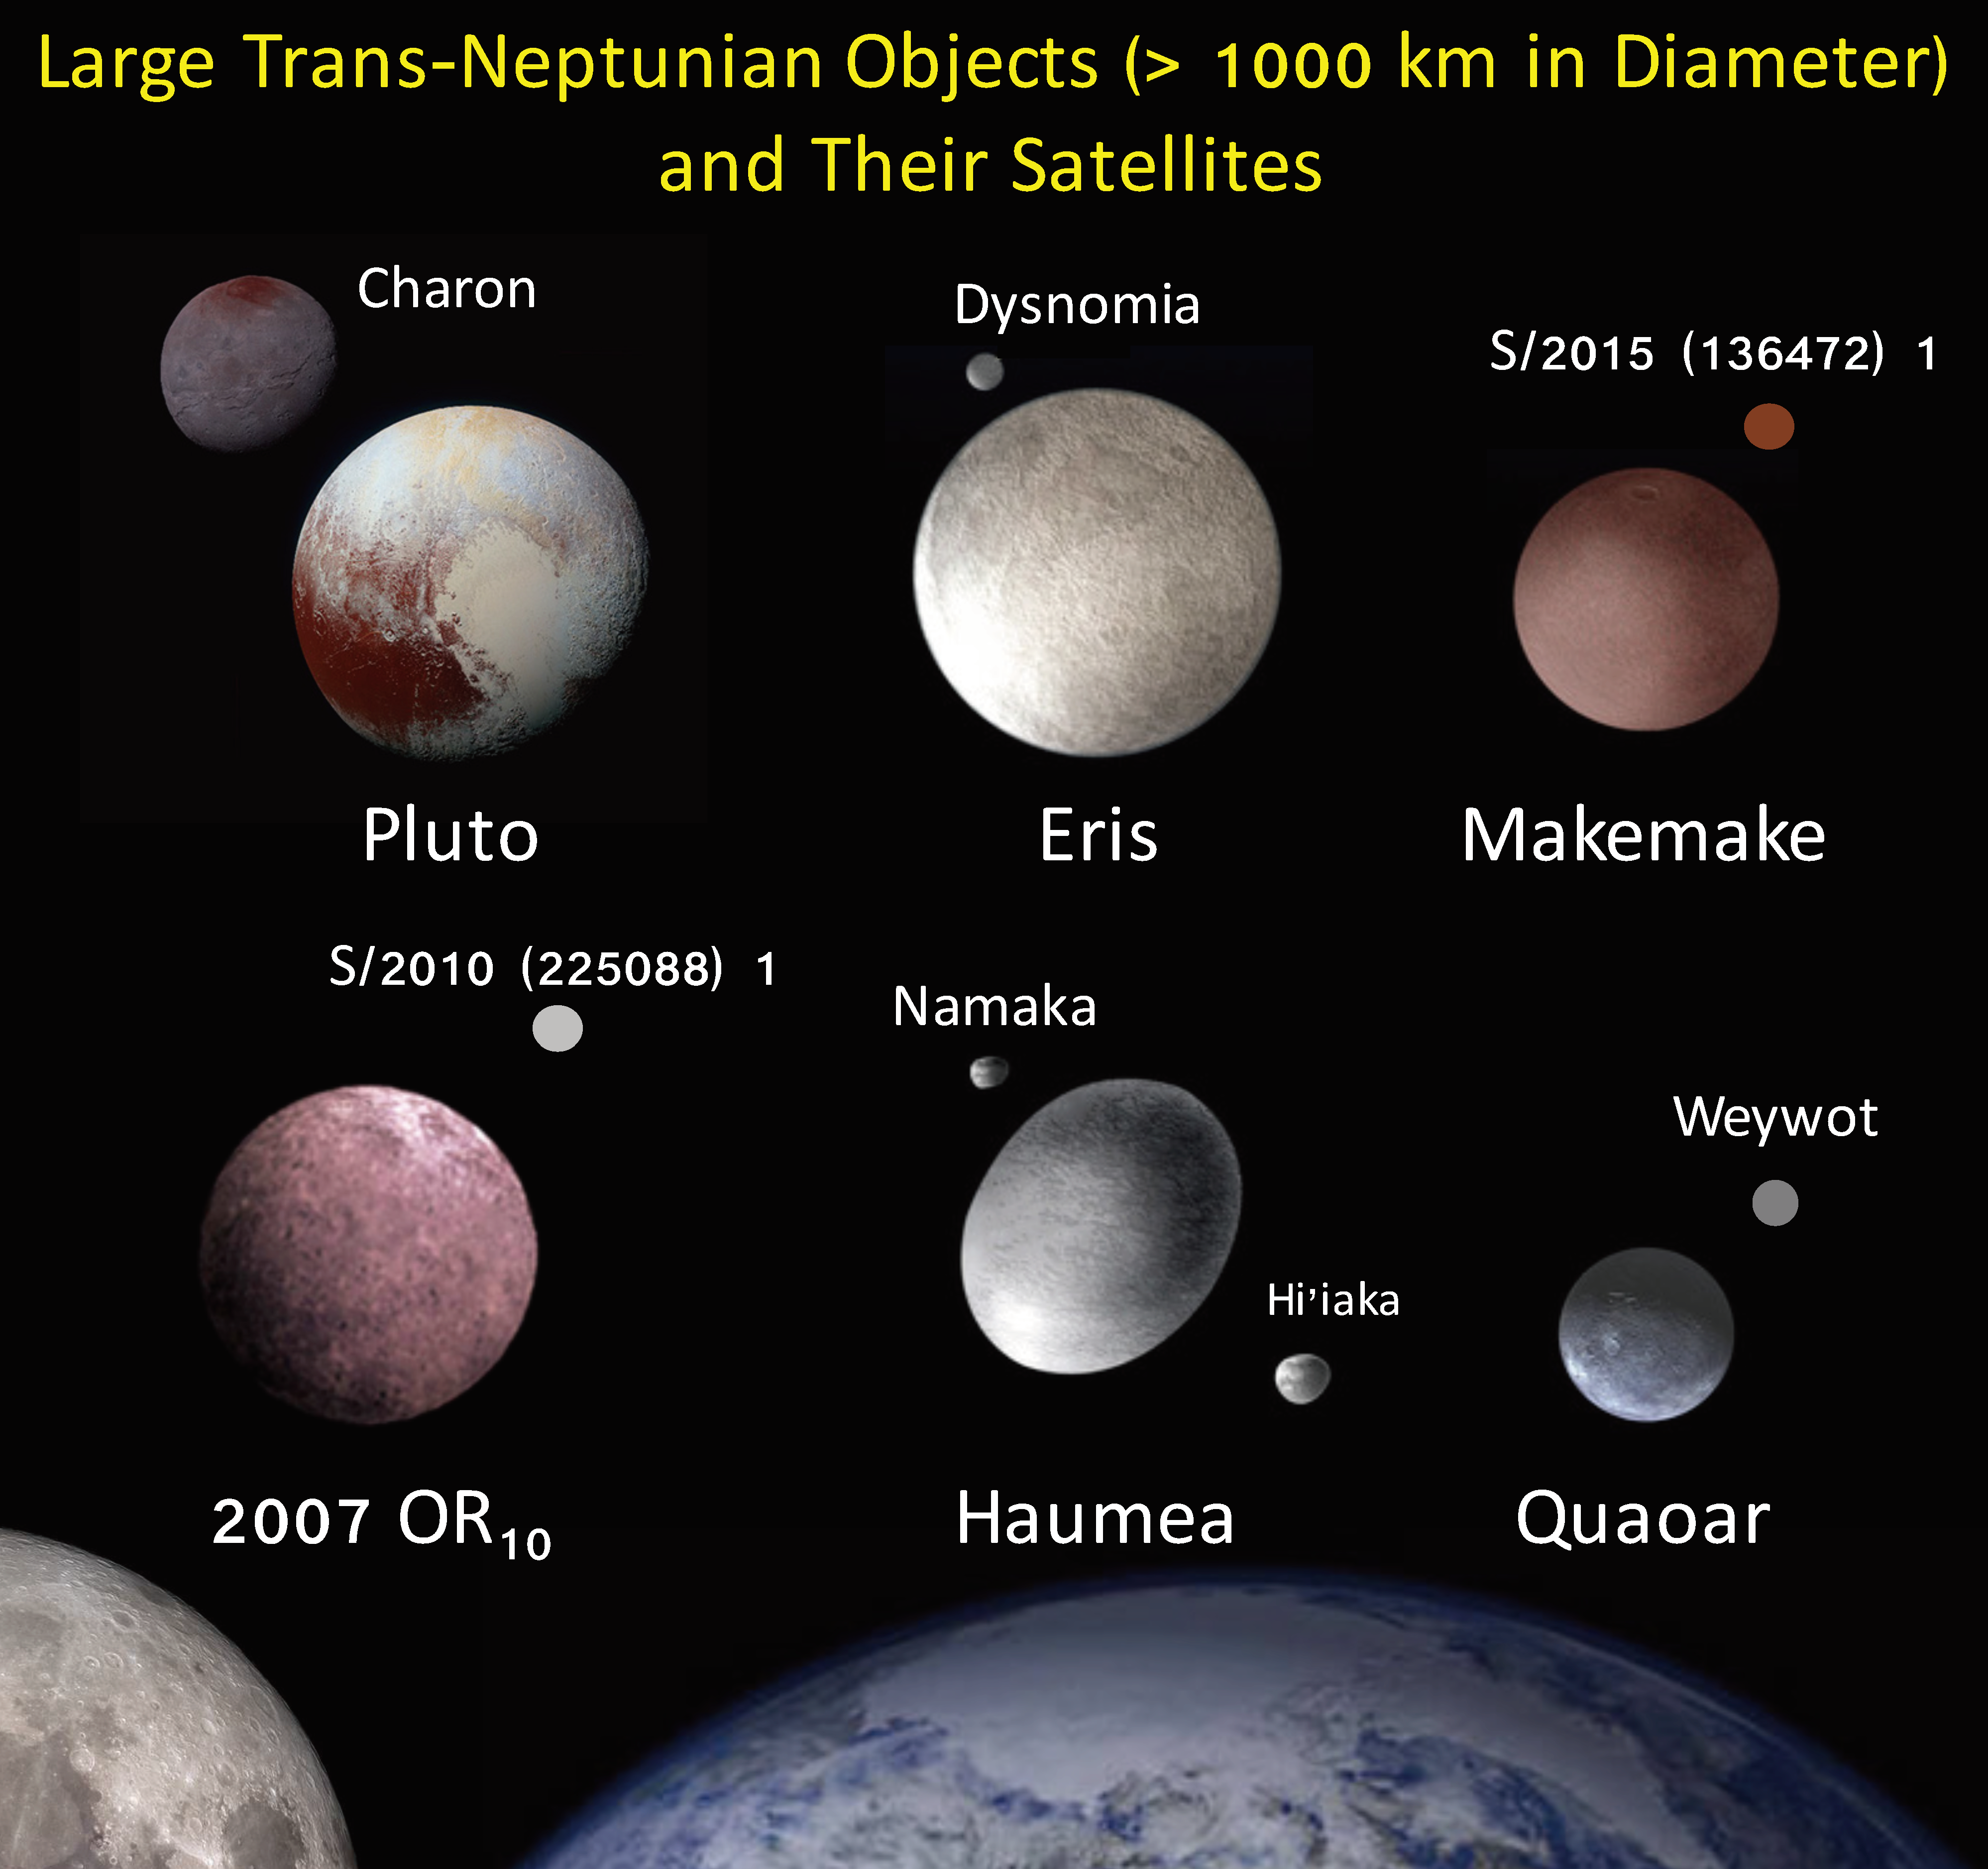 次 の うち 冥王星 の 衛星 は どれ